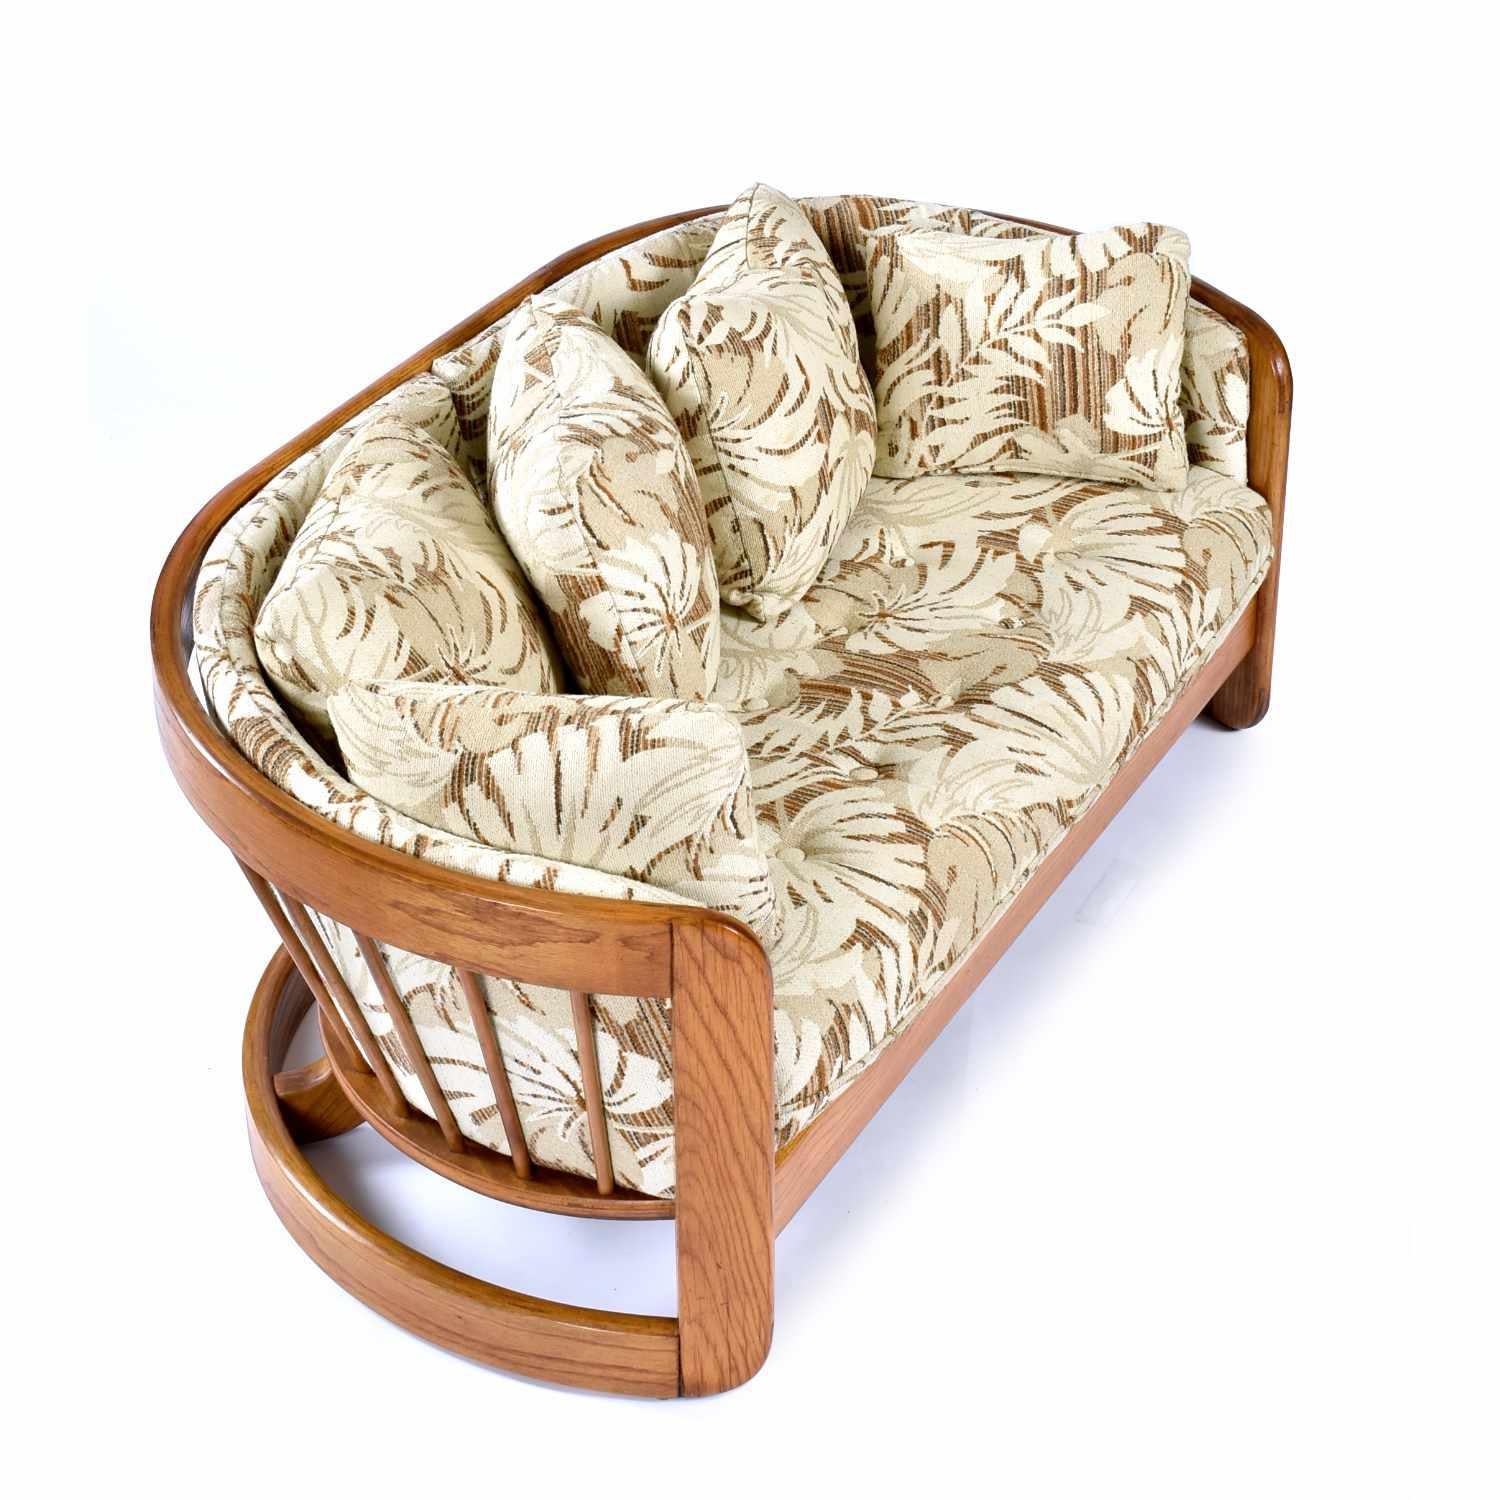 Vintage 1980s solid oak curved loveseat sofa by Howard Furniture. Le canapé de la causeuse est recouvert de sa tapisserie d'origine. Le tissu est un motif botanique dans des tons neutres de beige, crème et marron. La causeuse est étonnamment